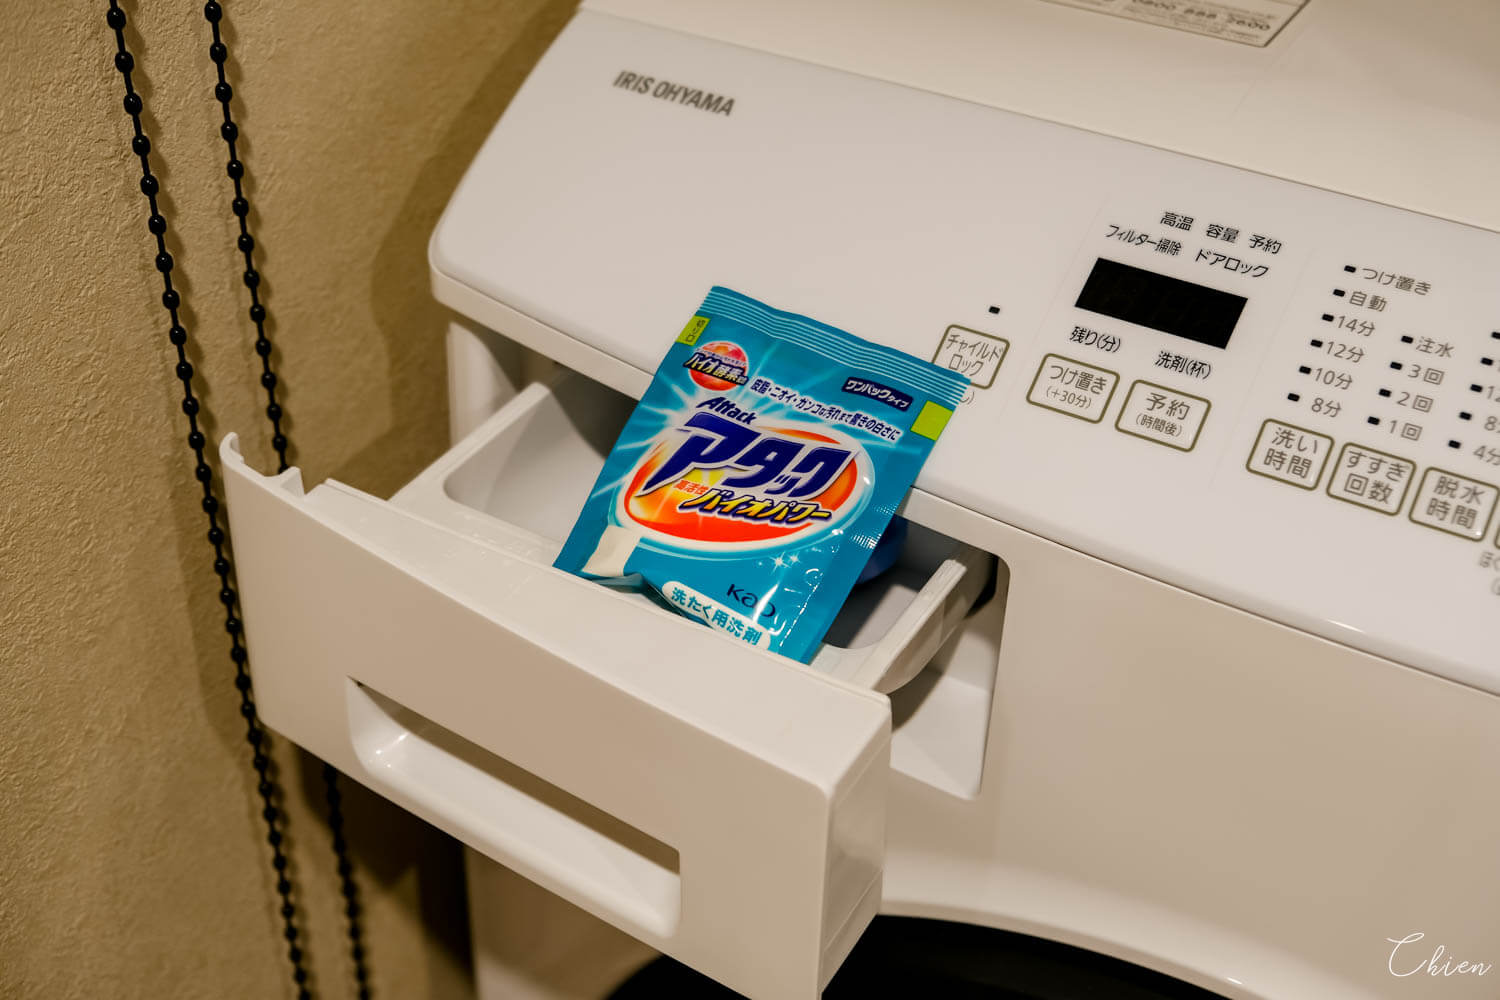  東京日本橋 MIMARU 客房洗衣機